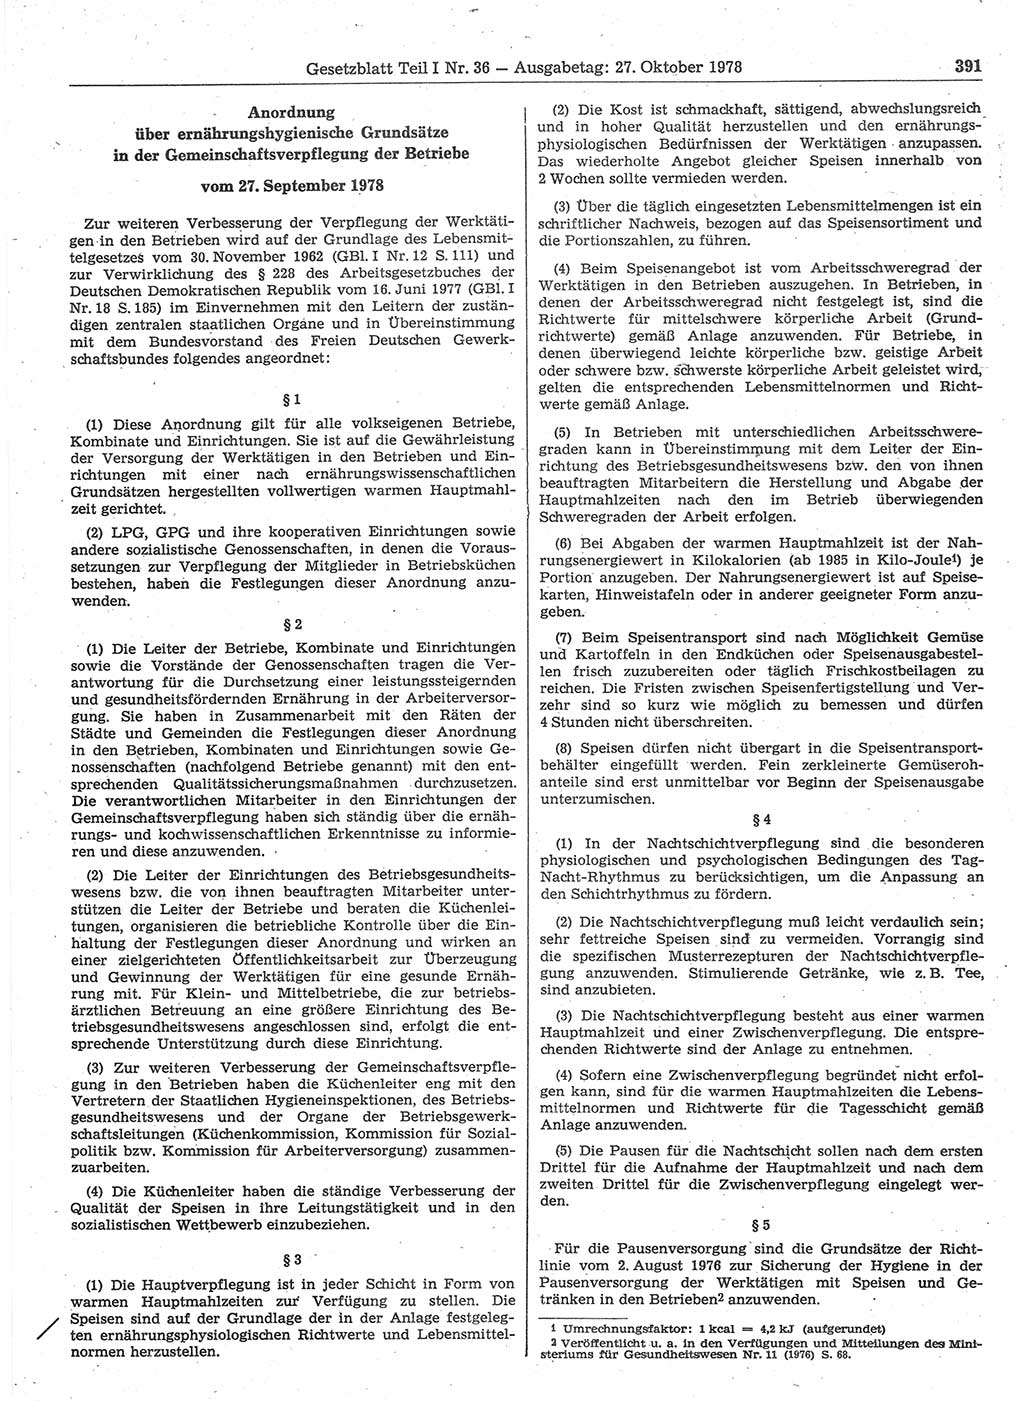 Gesetzblatt (GBl.) der Deutschen Demokratischen Republik (DDR) Teil Ⅰ 1978, Seite 391 (GBl. DDR Ⅰ 1978, S. 391)